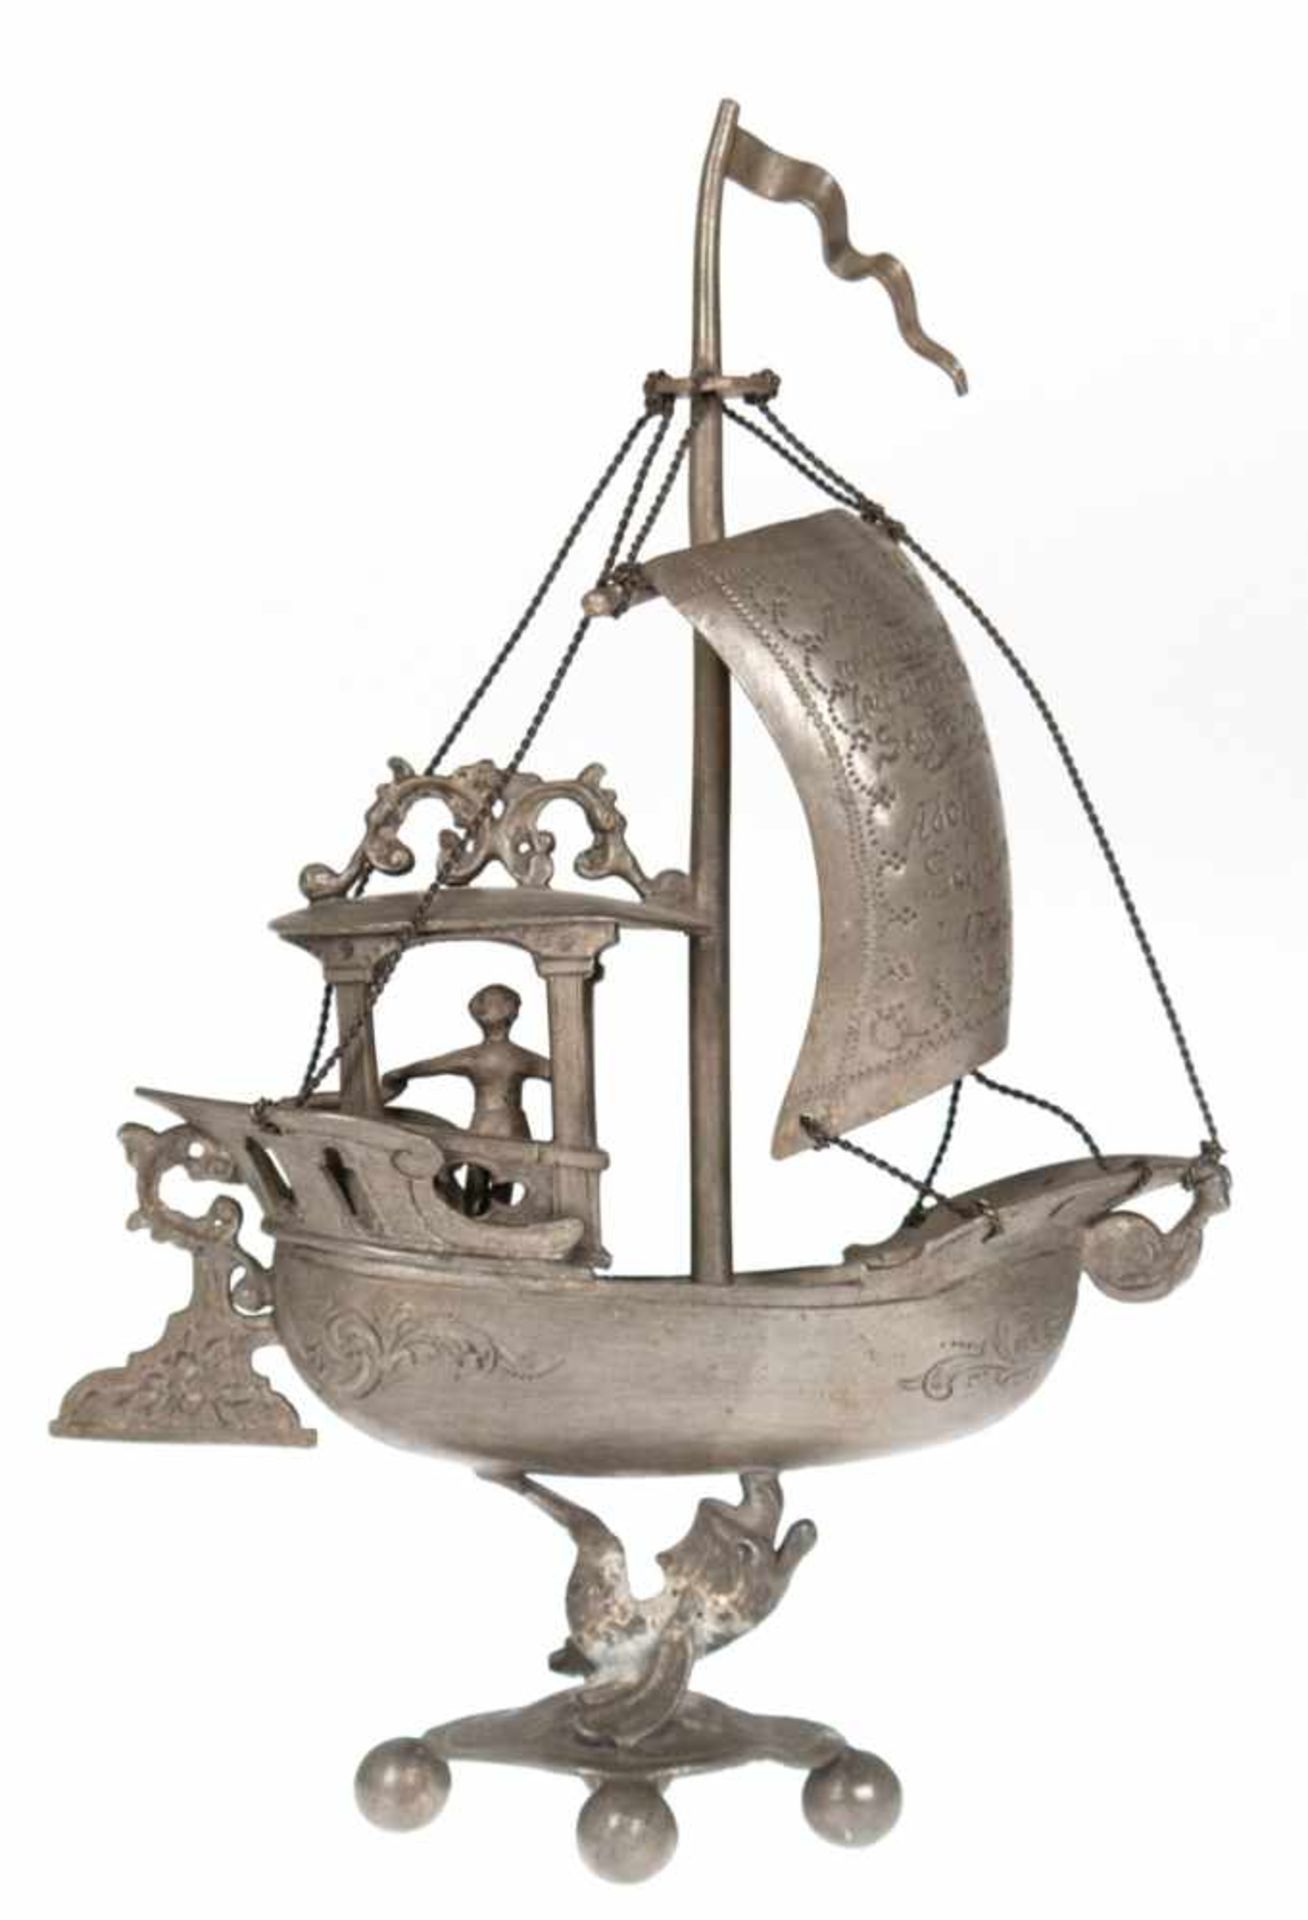 Segelschiff, Zinn, datiert 1703, Schiffskorpus getragen von einem plastischen Fisch auf4-passigen